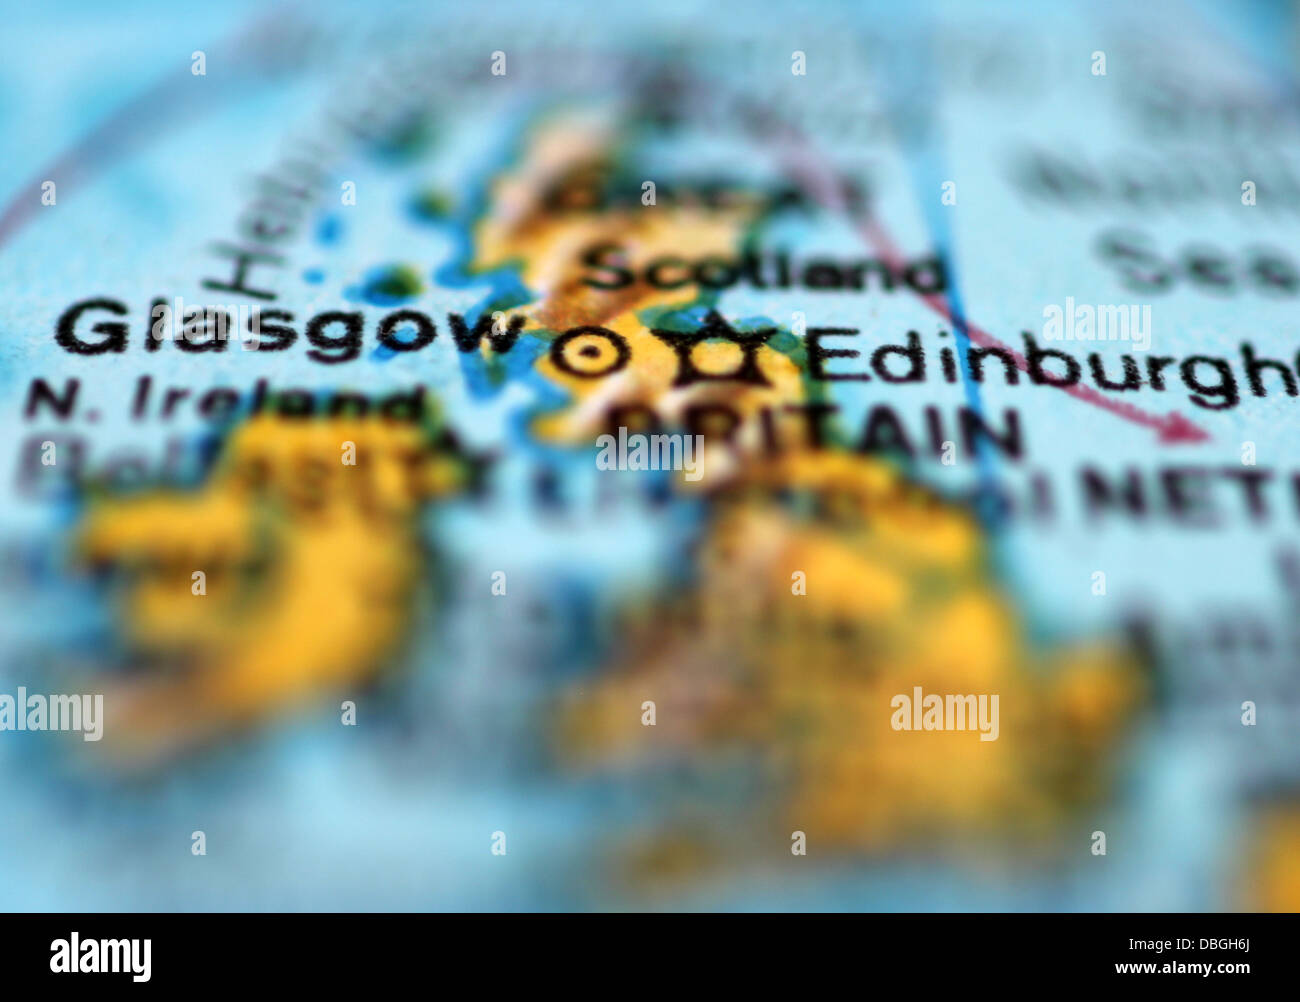 Kartenausschnitt Hervorhebung Schottland, insbesondere Glasgow und Edinburgh Stockfoto